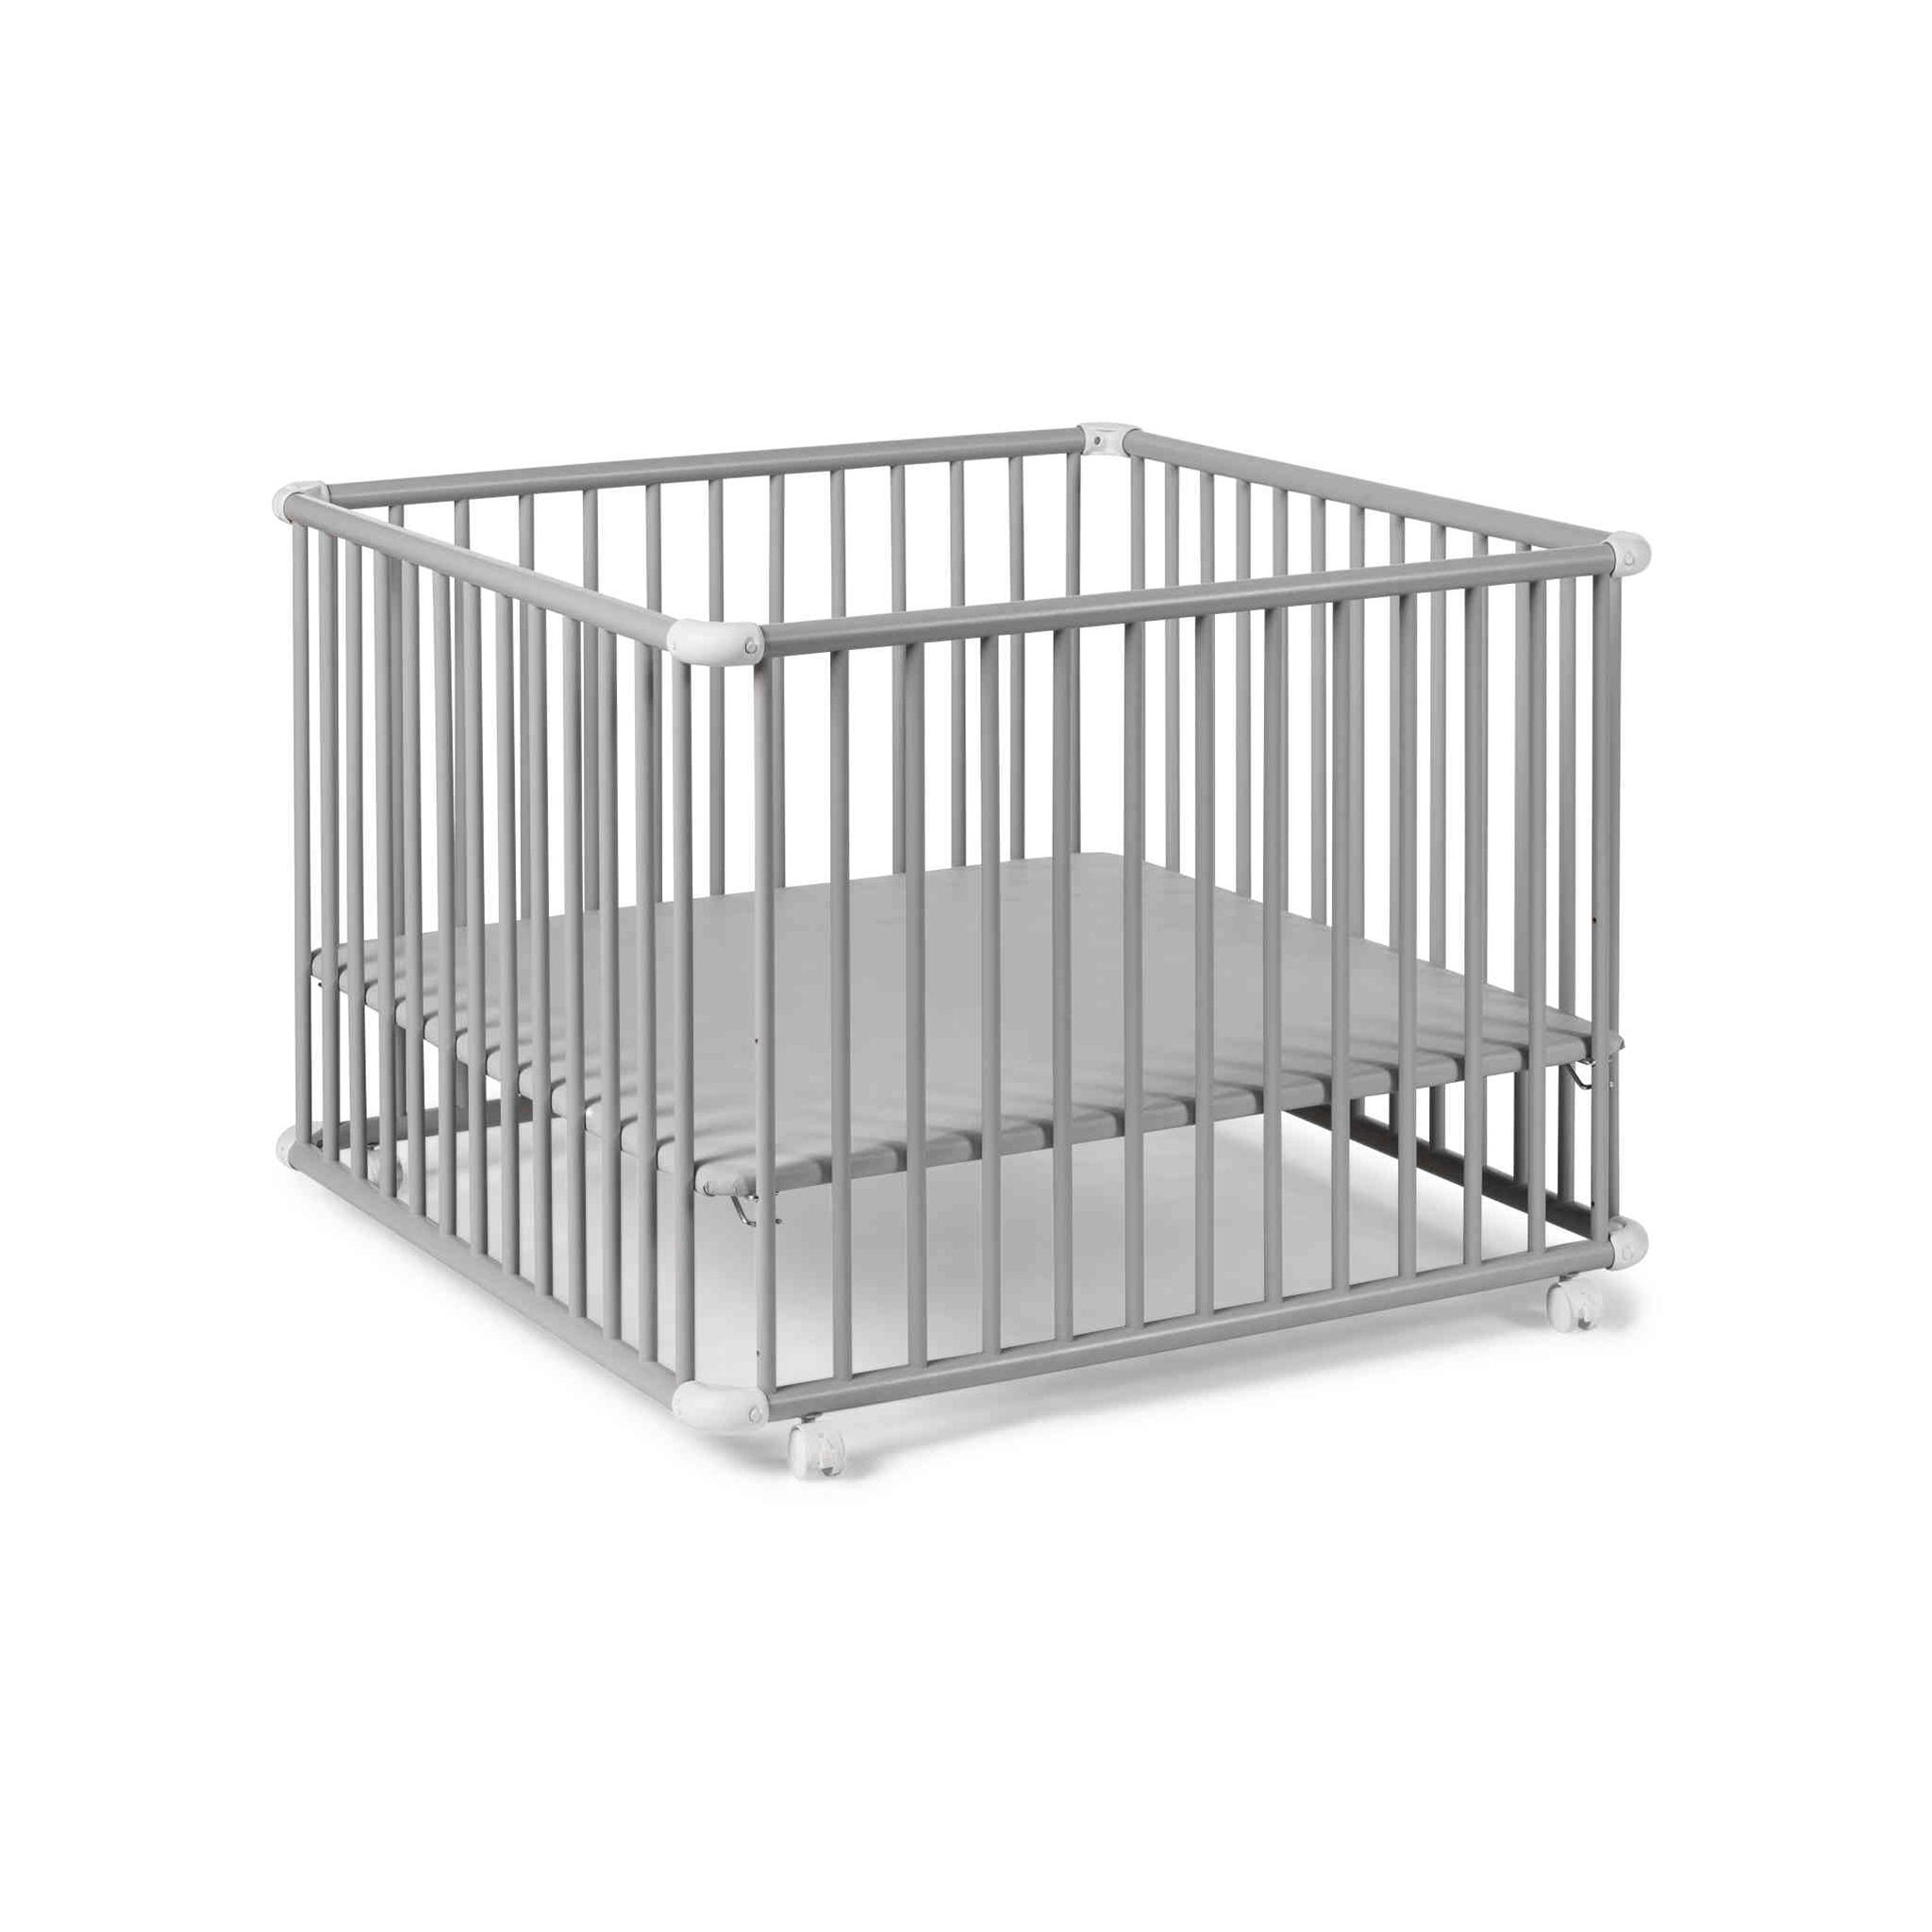 geuther Barrière de lit enfant bois blanc 90 cm